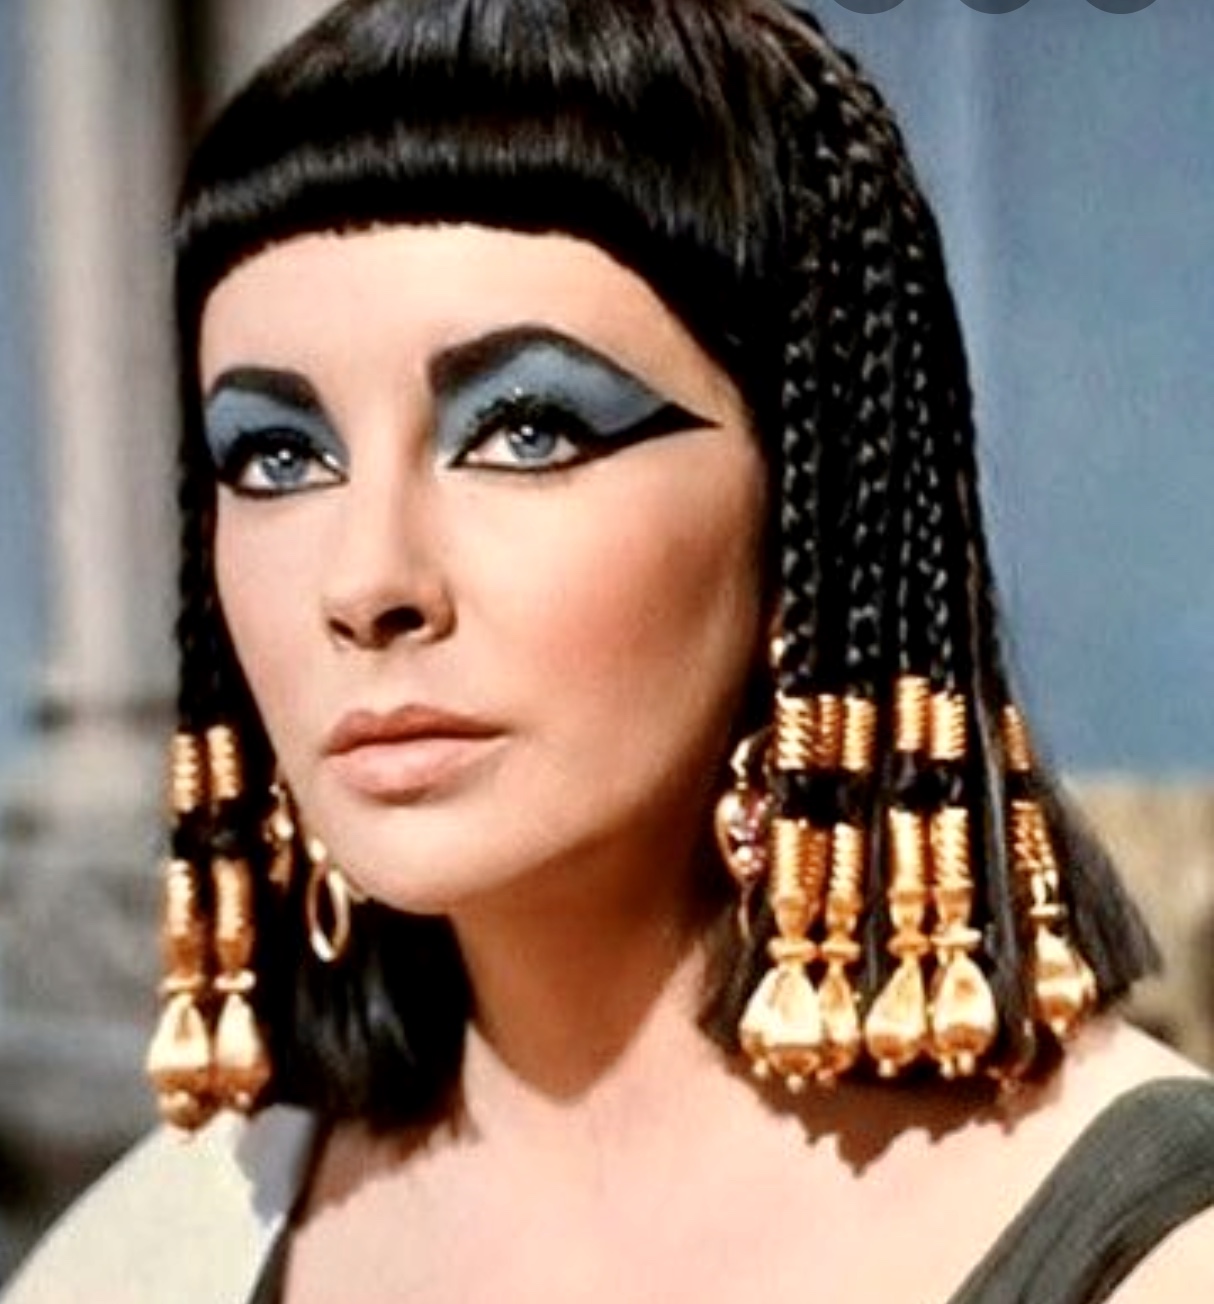 Femme égyptienne au maquillage égyptien sur le visage, s'exprimant à travers RÉCITS GOURMANDS.